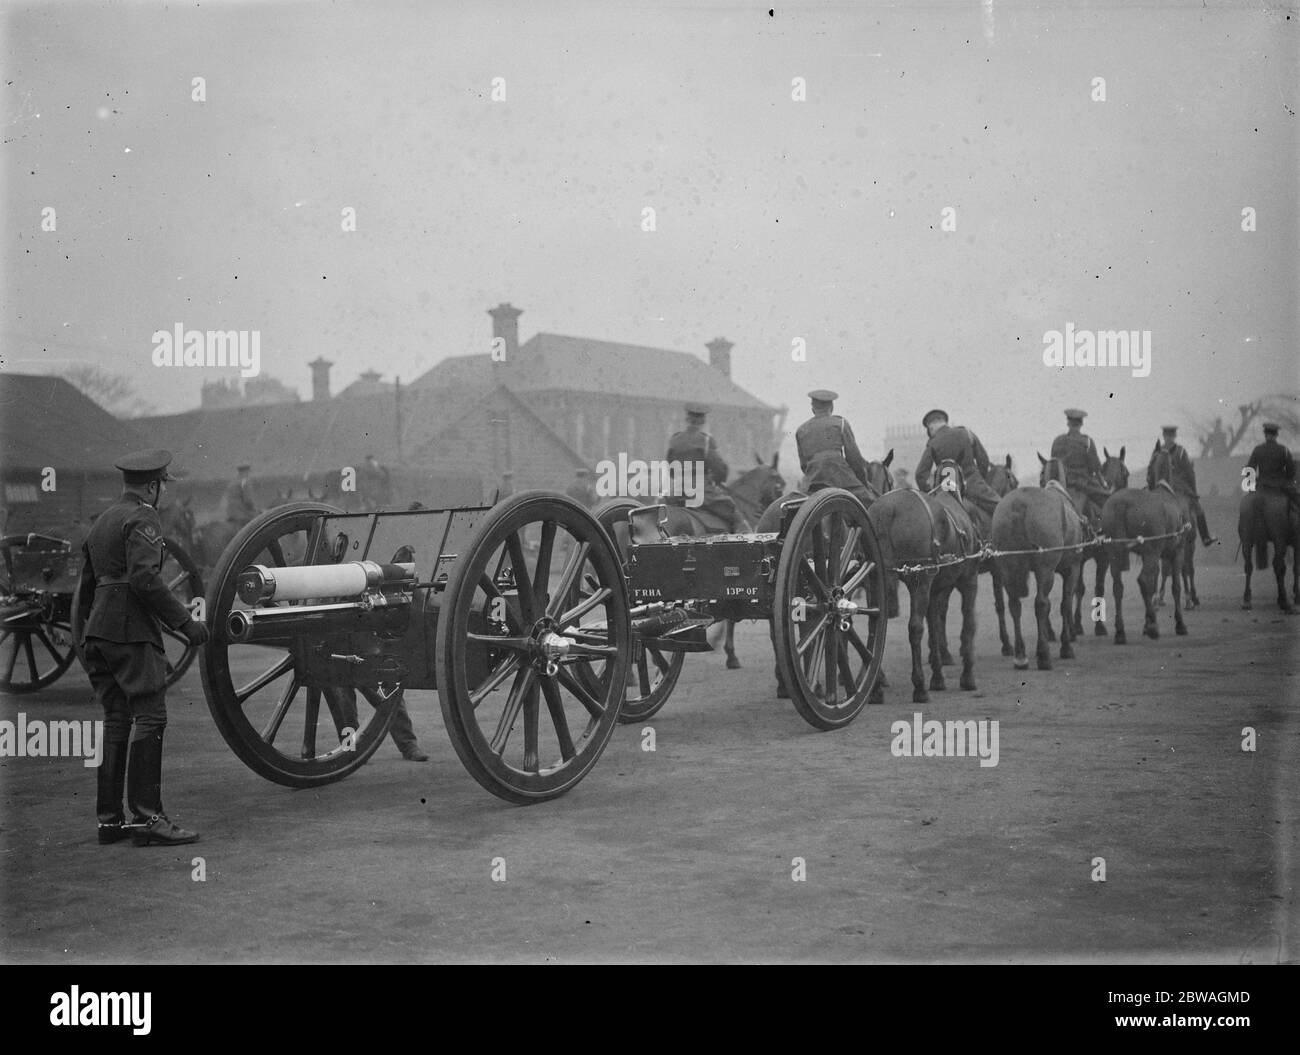 Le chariot à canon qui a été utilisé pour les funérailles du roi George V en quittant St Johns Wood Barracks en route pour Woolwich , où il a été remis pour conservation au dépôt le 20 mars 1936 Banque D'Images